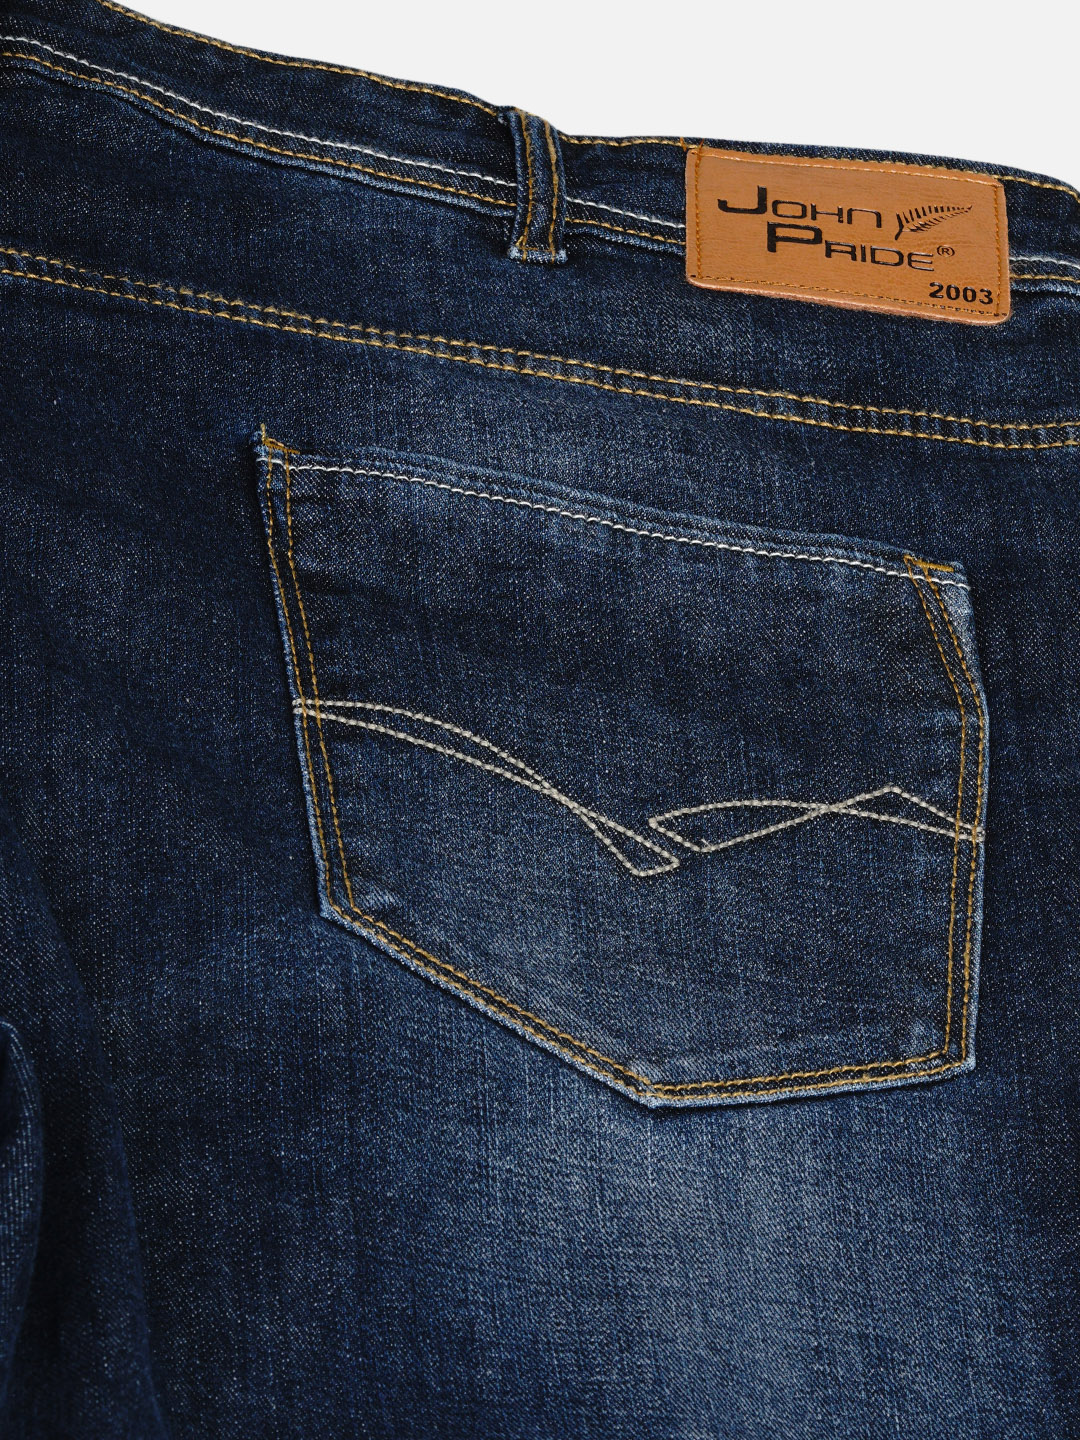 affordables/jeans/EJPJ2030/ejpj2030-2.jpg